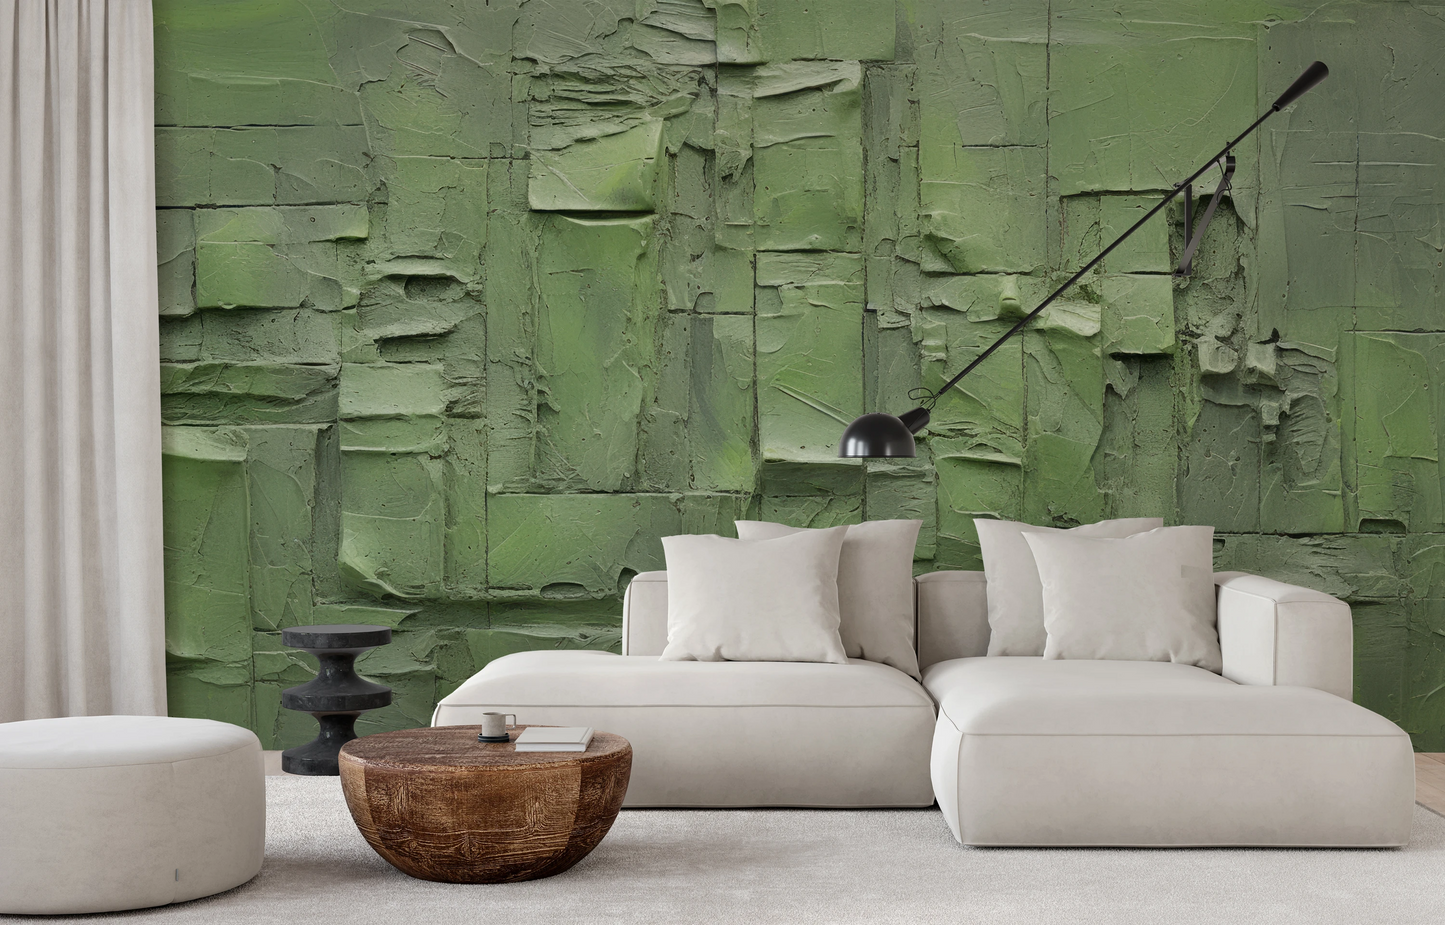 Fototapeta artystyczna o nazwie Green Patchwork pokazana w aranżacji wnętrza.